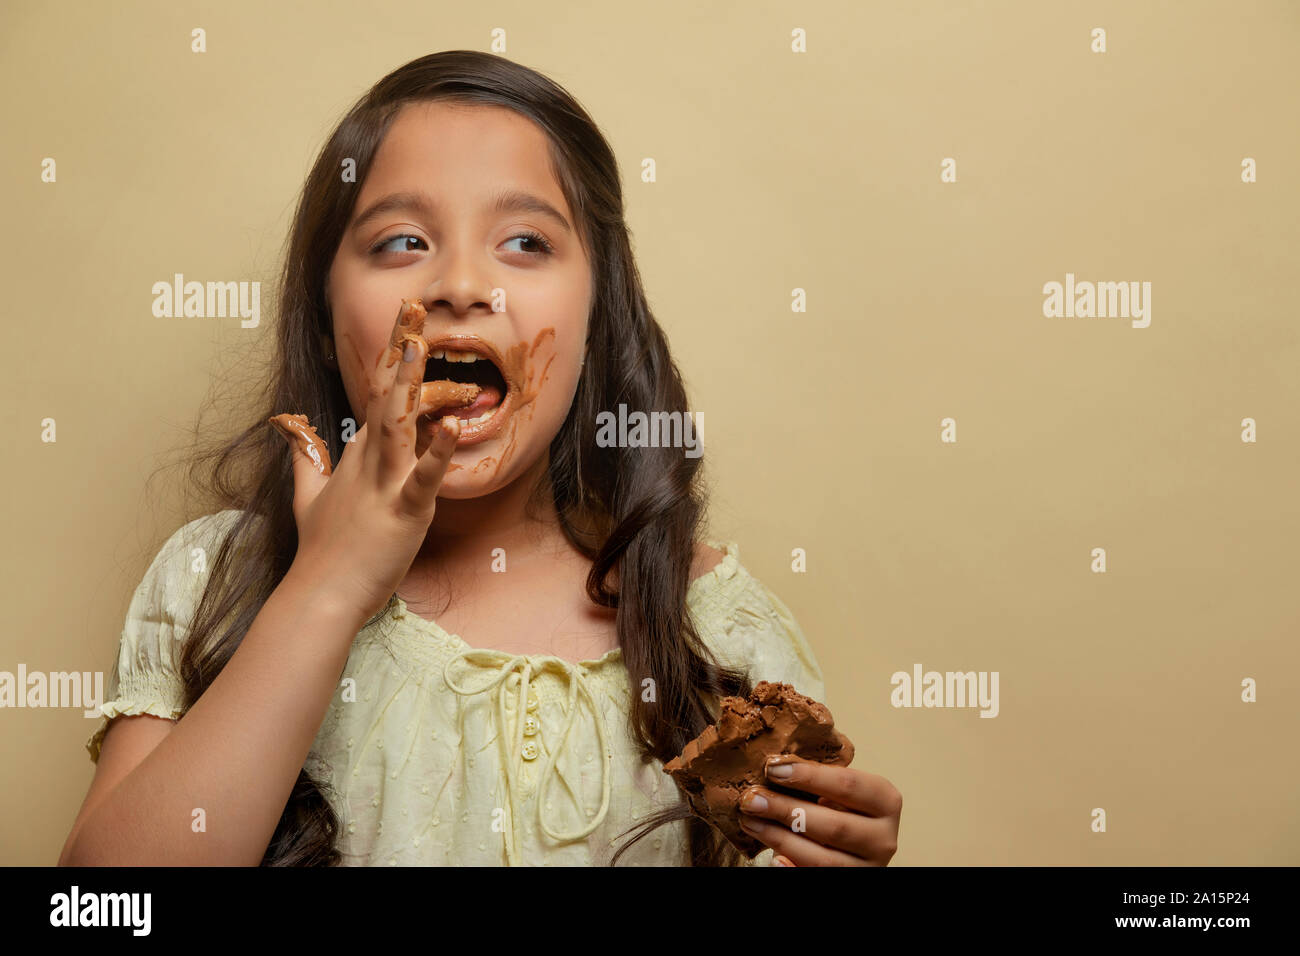 Mädchen lecken Schokolade von den Fingern halten eine Tafel Schokolade in der anderen Hand weg suchen Stockfoto